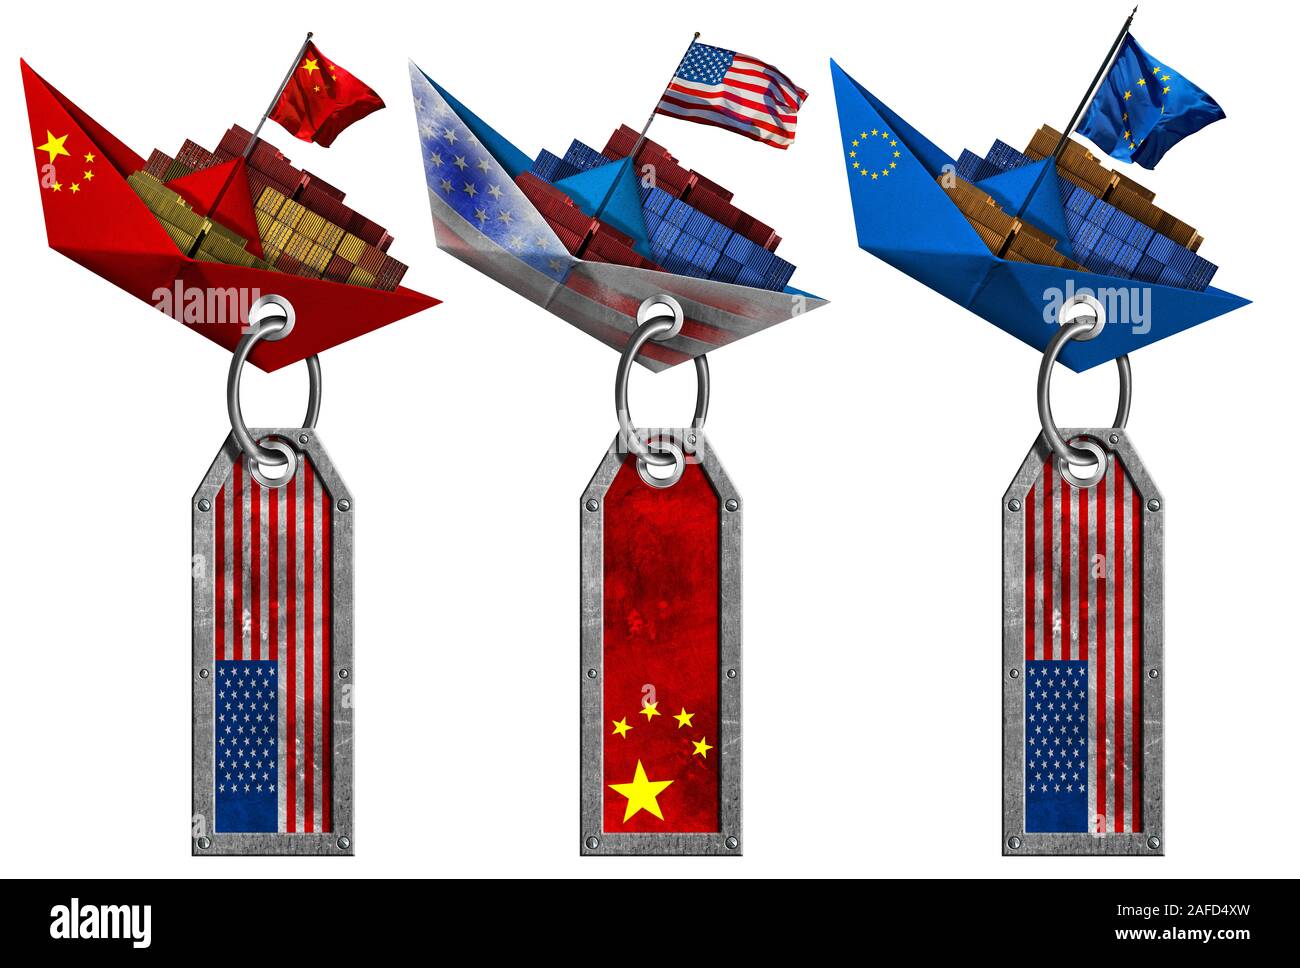 Stati Uniti d'America, Cina e Unione Europea guerra commerciale concetto. Tre contenitore di carico di navi con bandiere nazionali e i tag di metallo, isolato su sfondo bianco Foto Stock